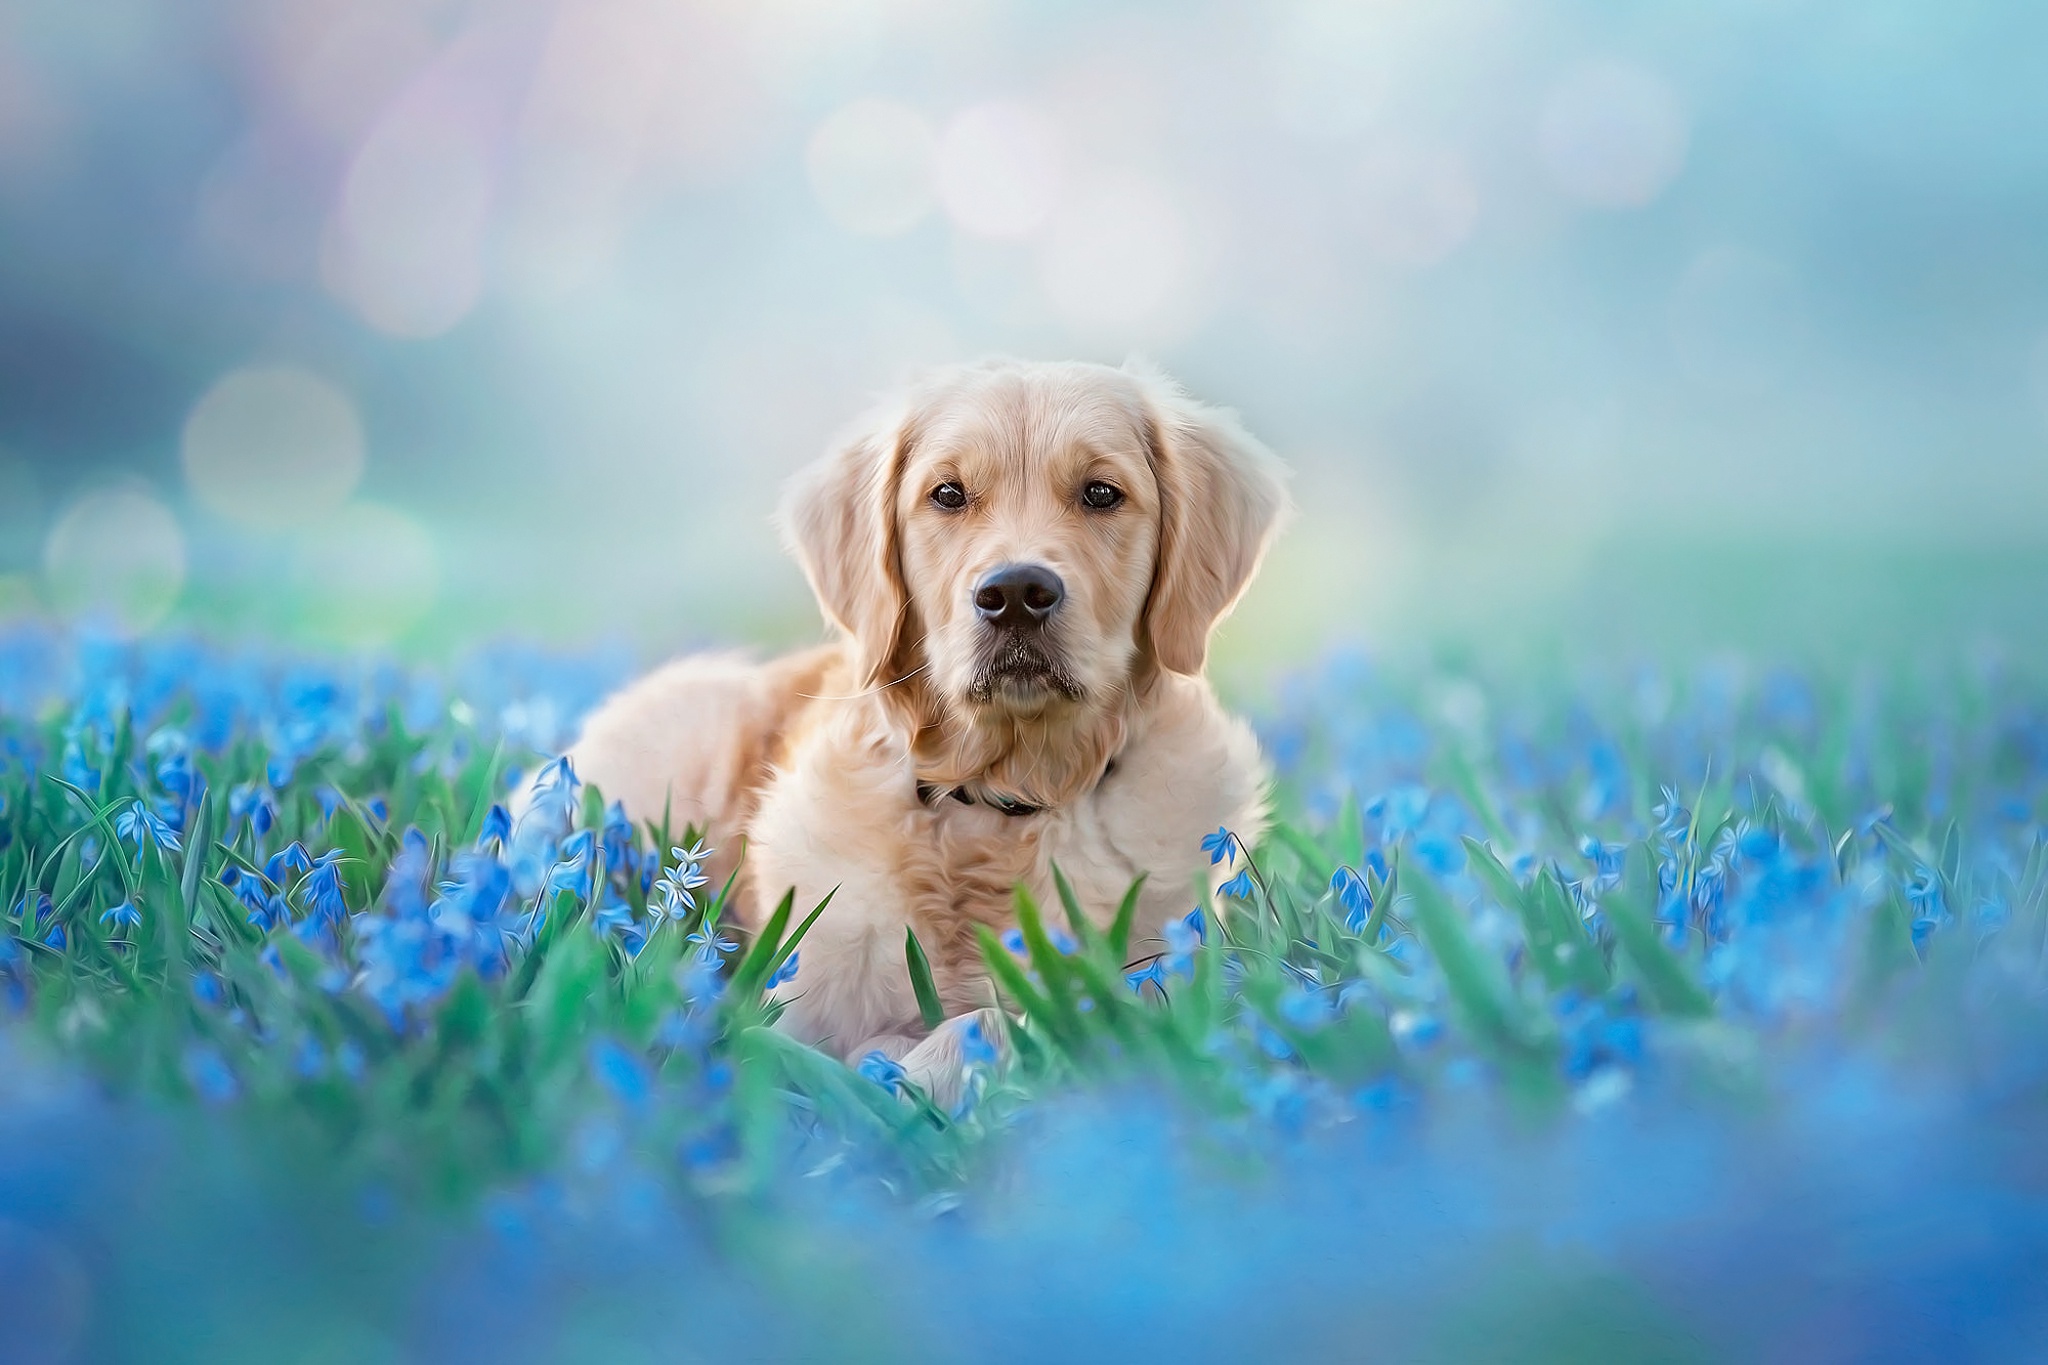 Download mobile wallpaper Dogs, Dog, Animal, Golden Retriever, Bokeh, Blue Flower for free.